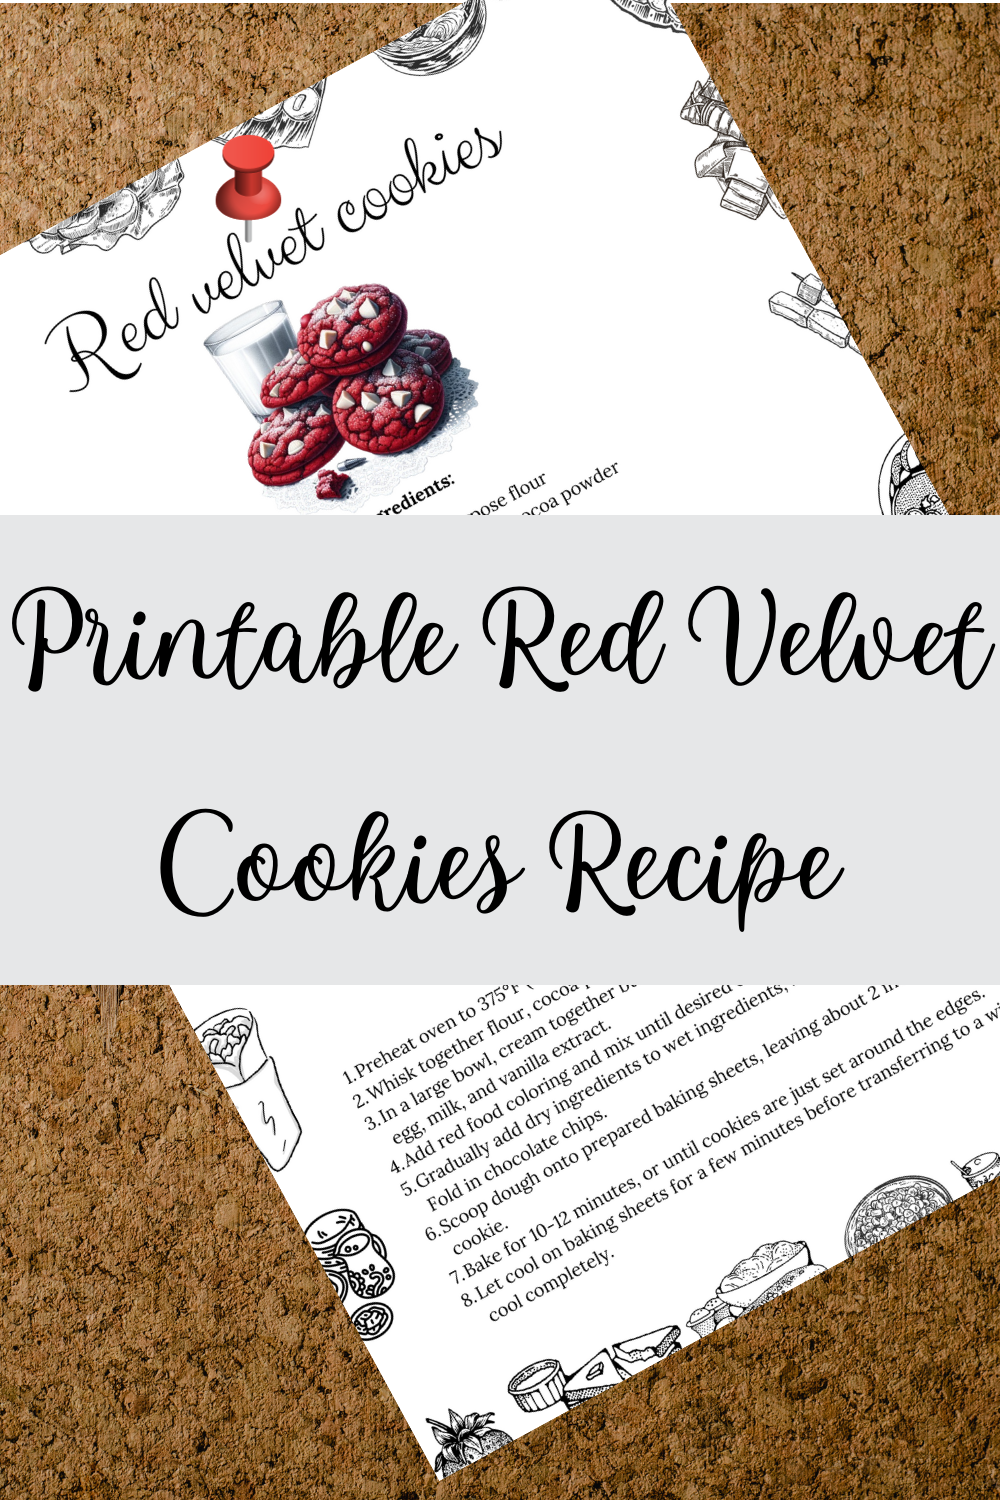 Printable Red Velvet Cookies Recipe